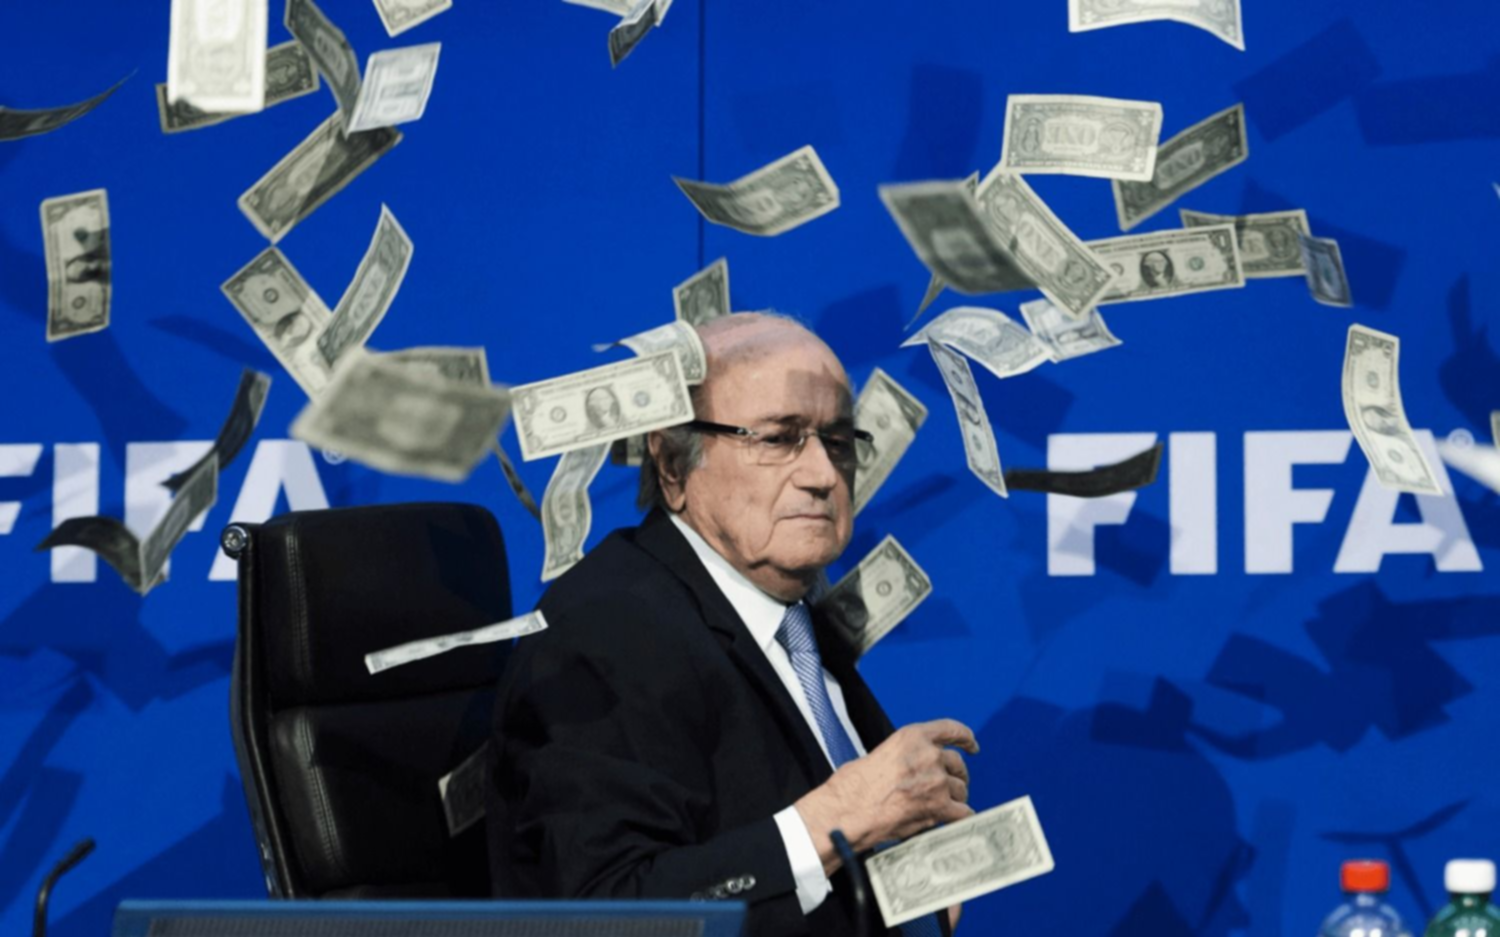 "FIFAGate, por el bien del fútbol": llega a la TV Pública la serie que contará todos los escándalos de corrupción